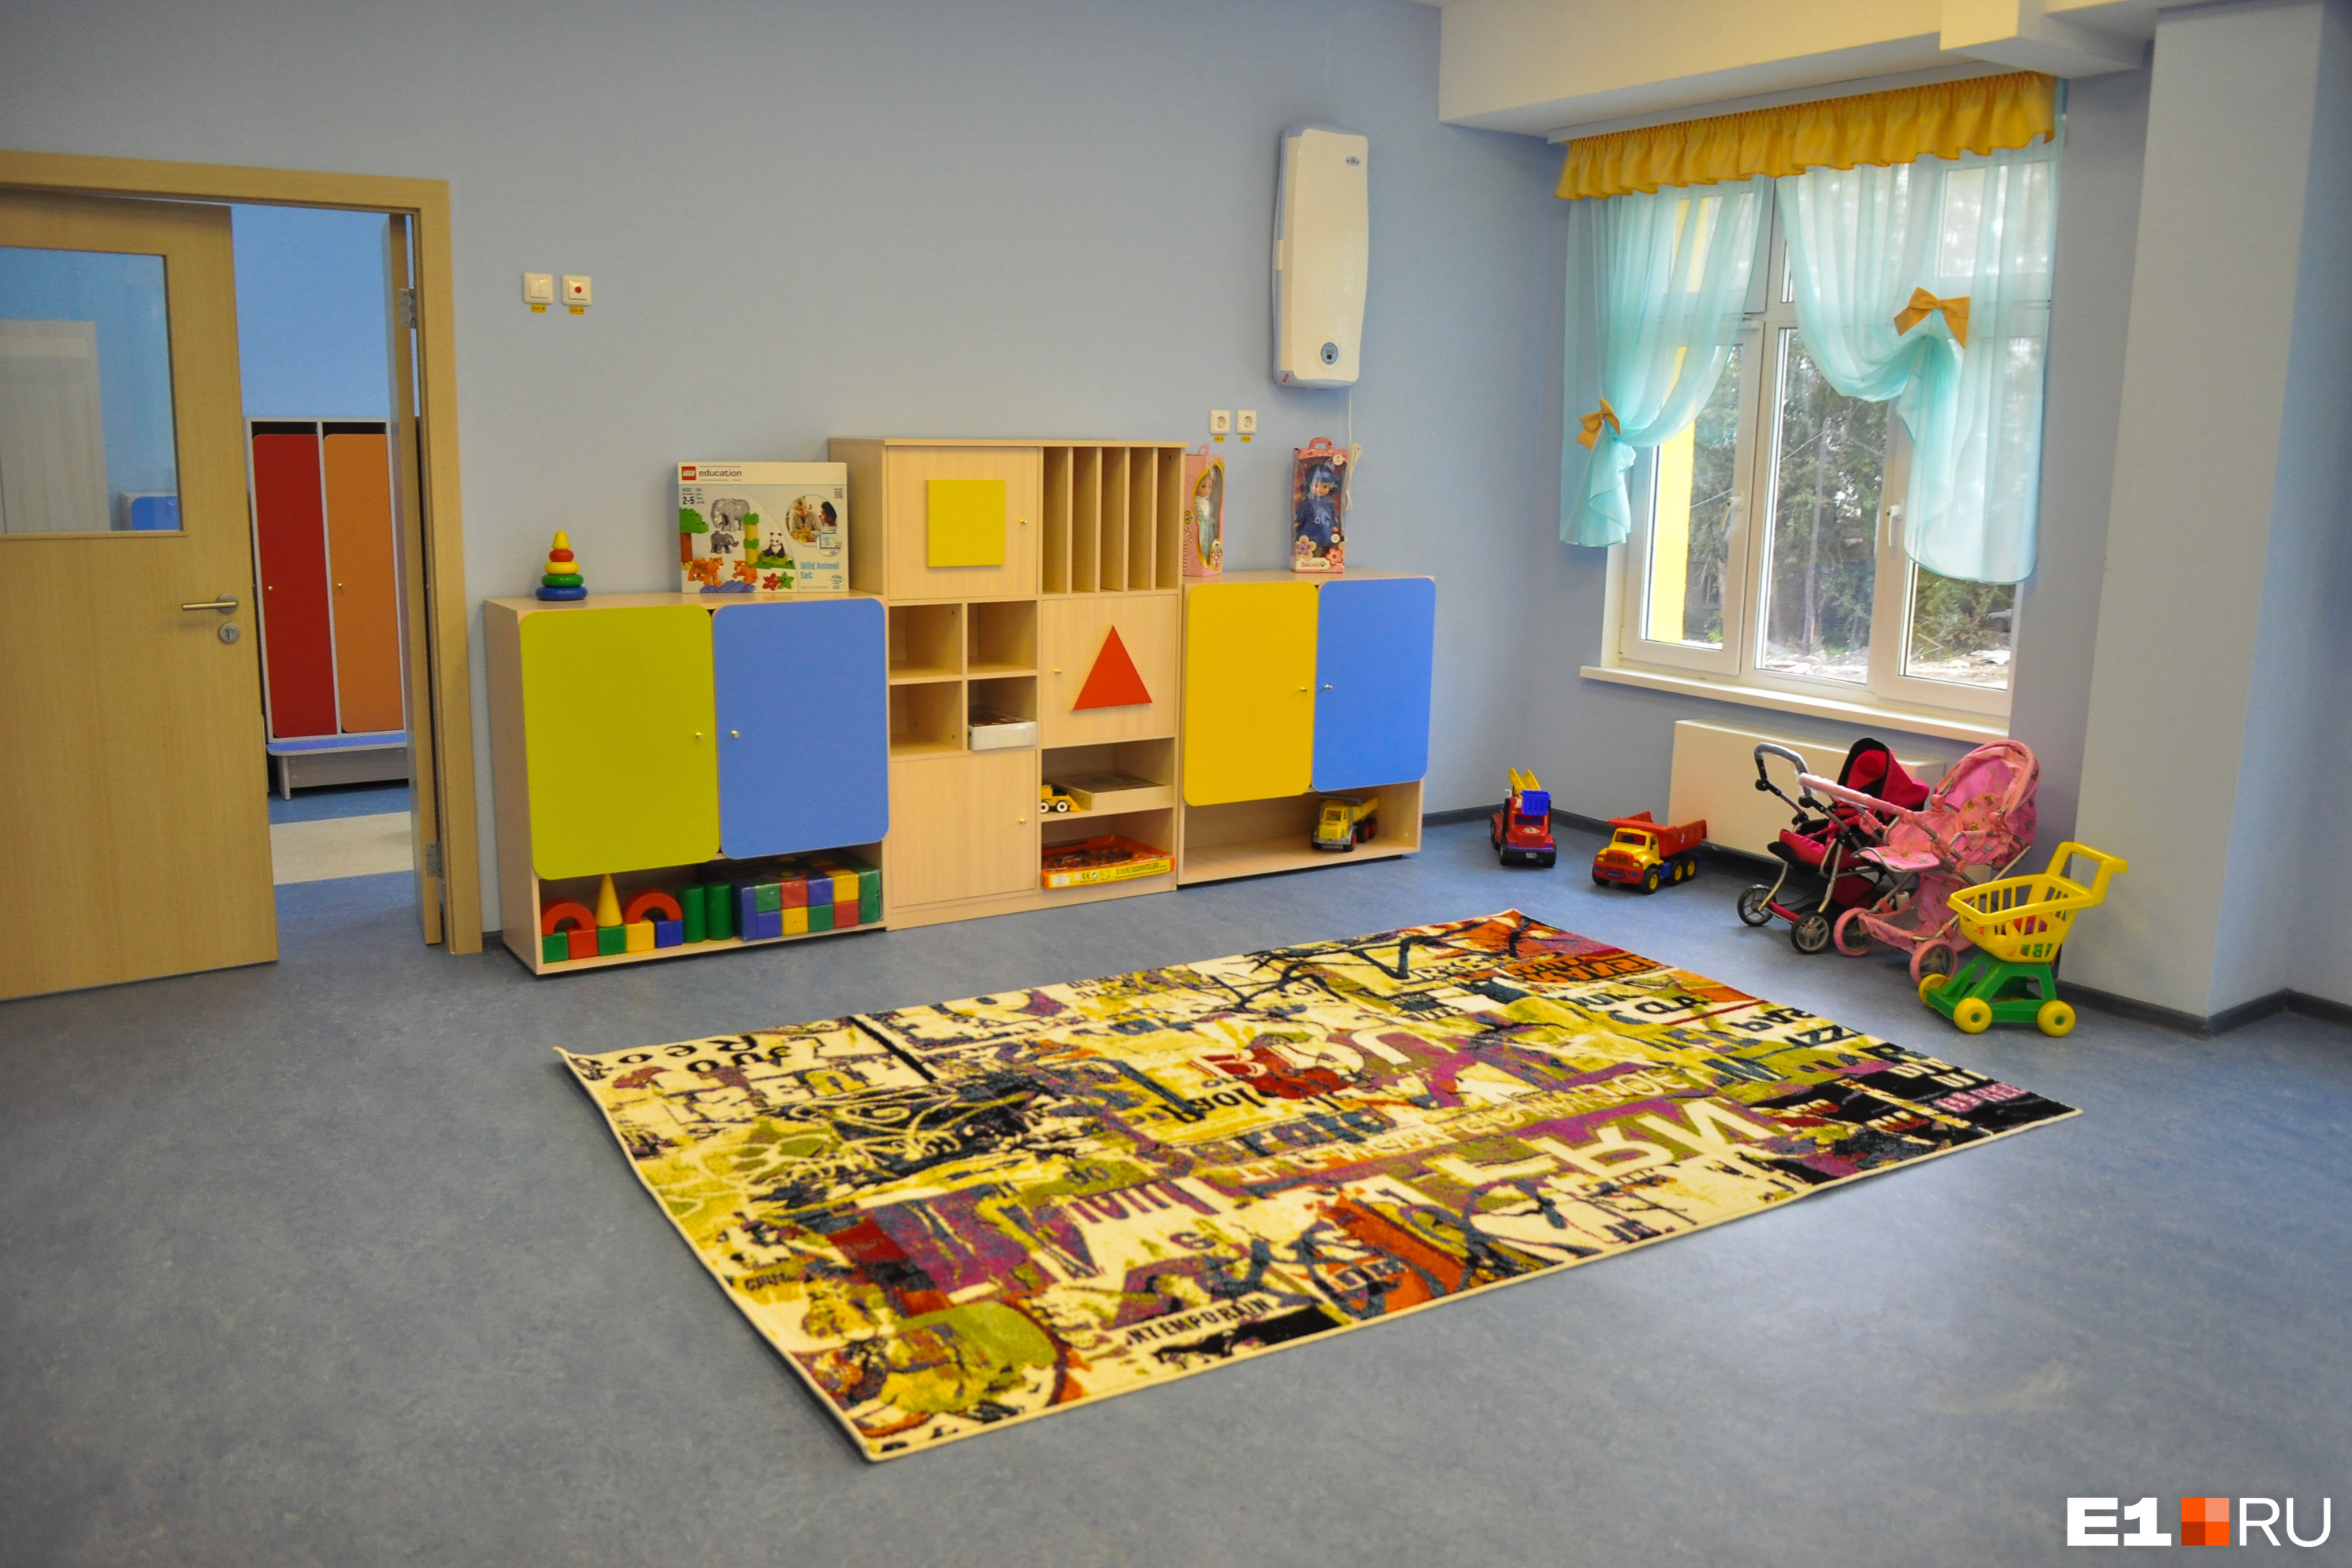 В детский сад под Екатеринбургом нагрянула проверка после жалоб родителей. Какие нарушения нашли?